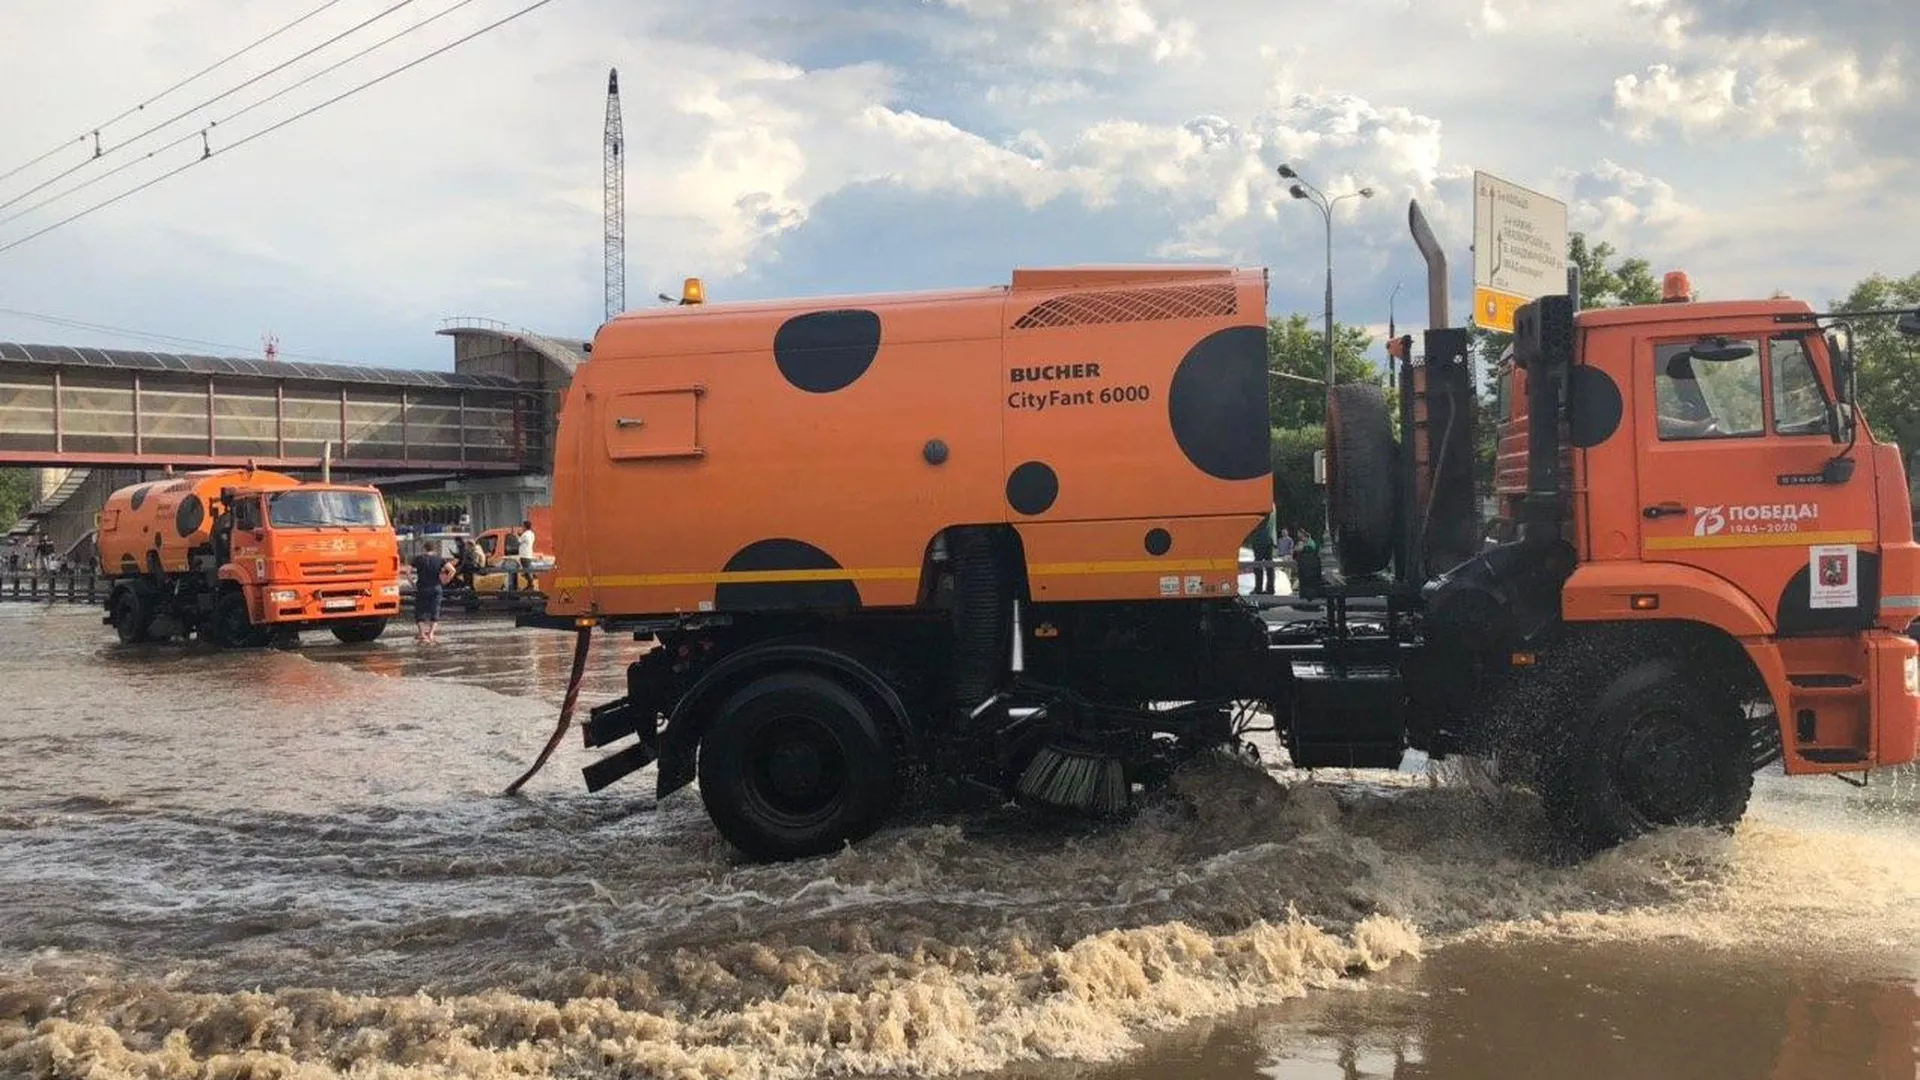 Спецтехника приехала на затопленный участок Дмитровского шоссе в Москве для откачки воды